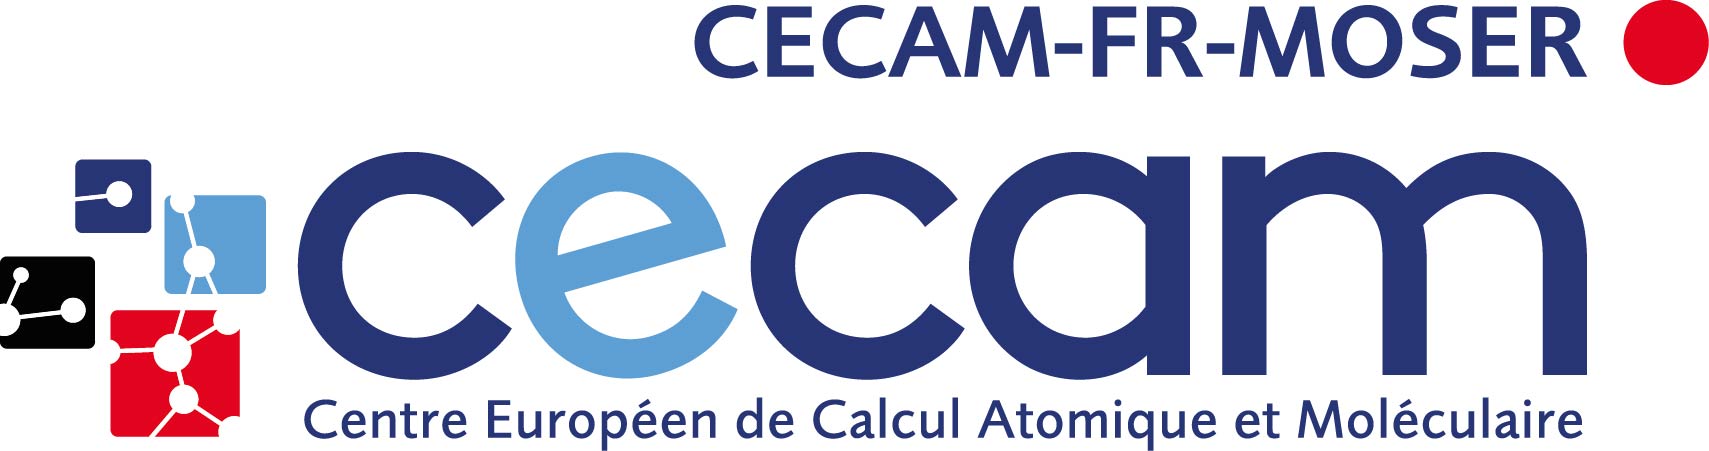 CECAM-FR-MOSER